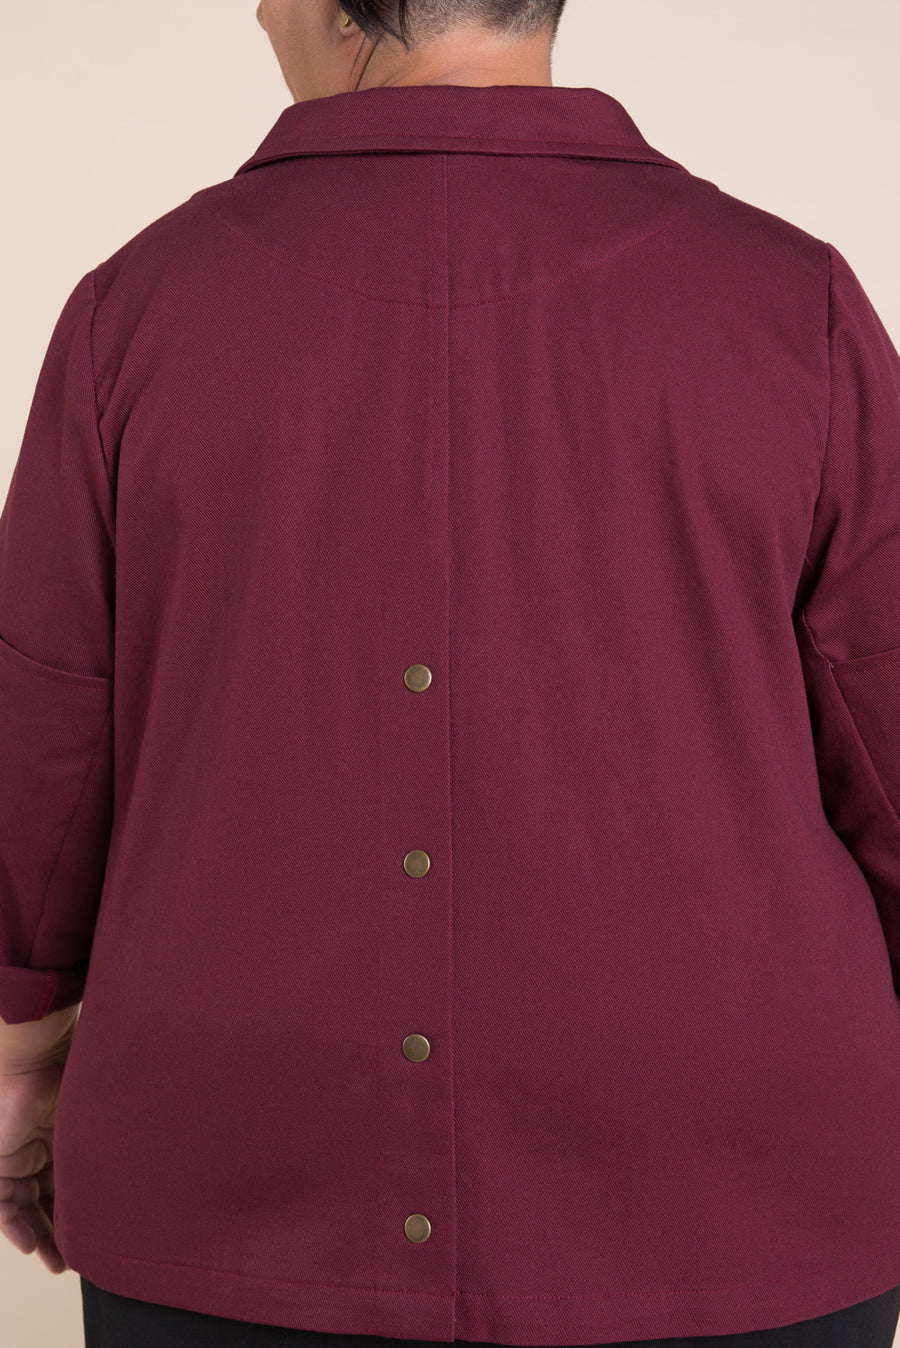 Sienna Maker Jacket Pattern - Cropped // Plus Size Utility and Chore Jacket Pattern // Closet Core Patterns